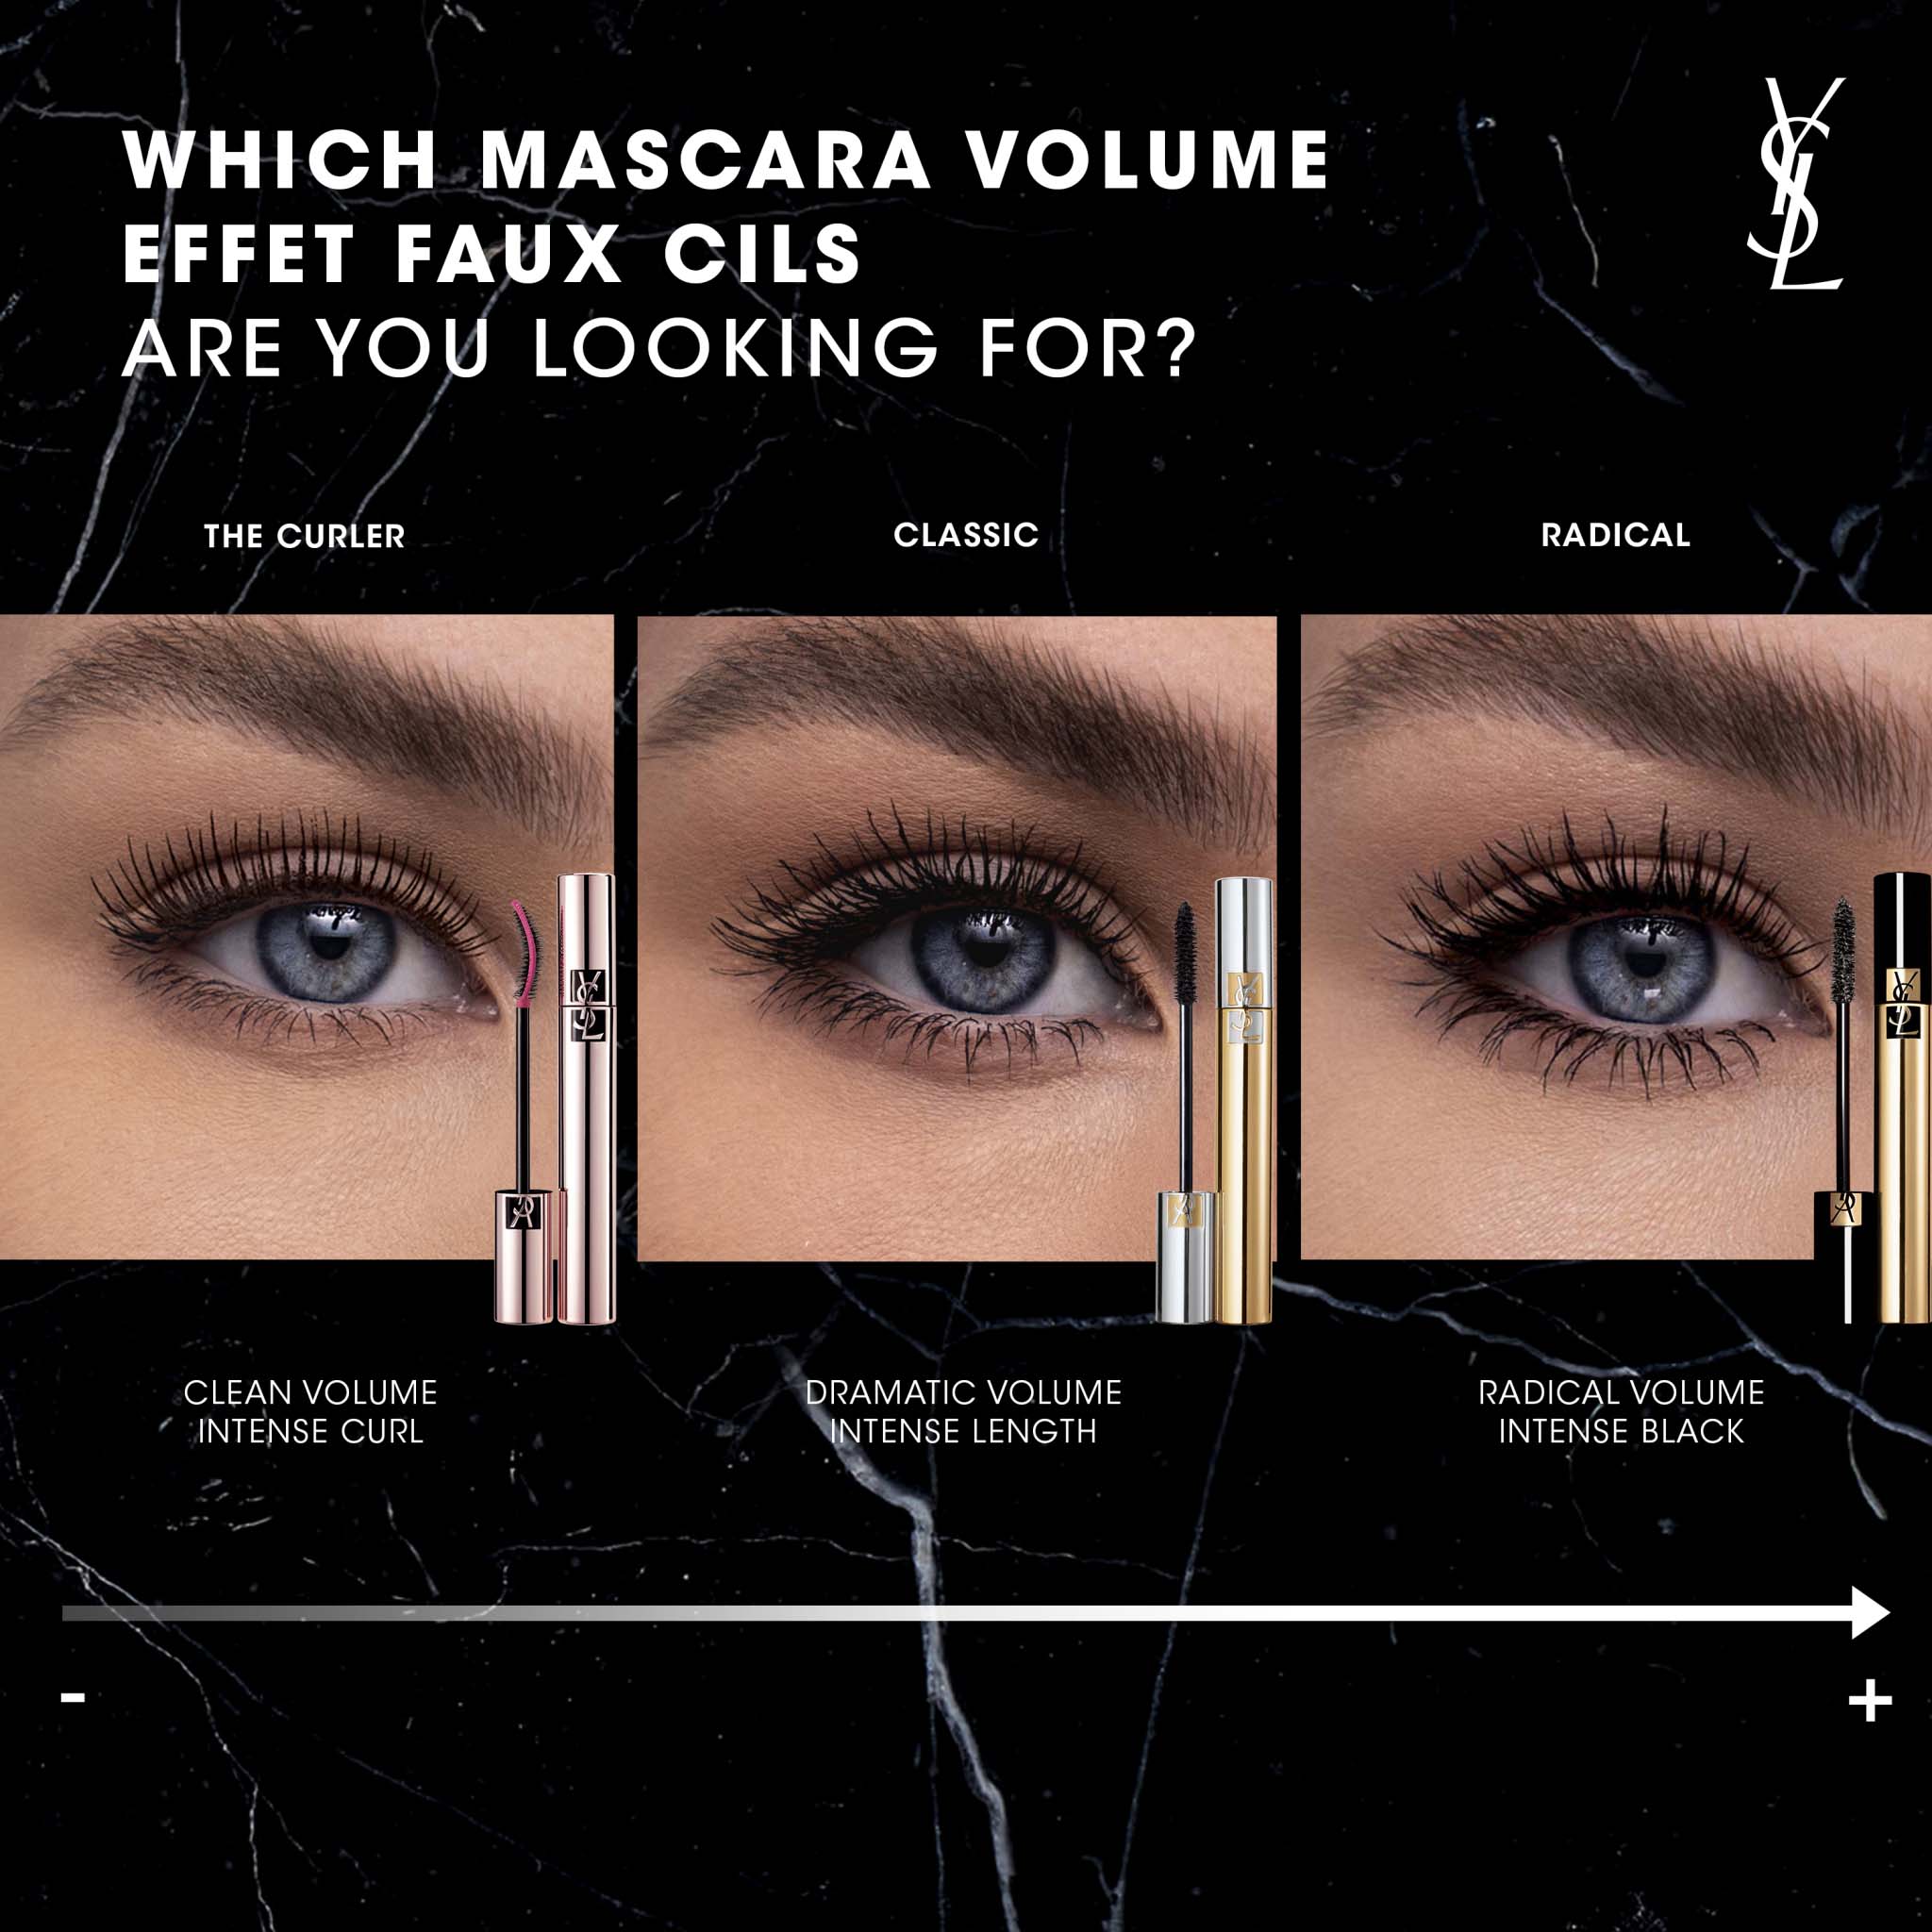 Yves Saint Laurent Volume Effet Faux Cils Luxurious Mascara - Black